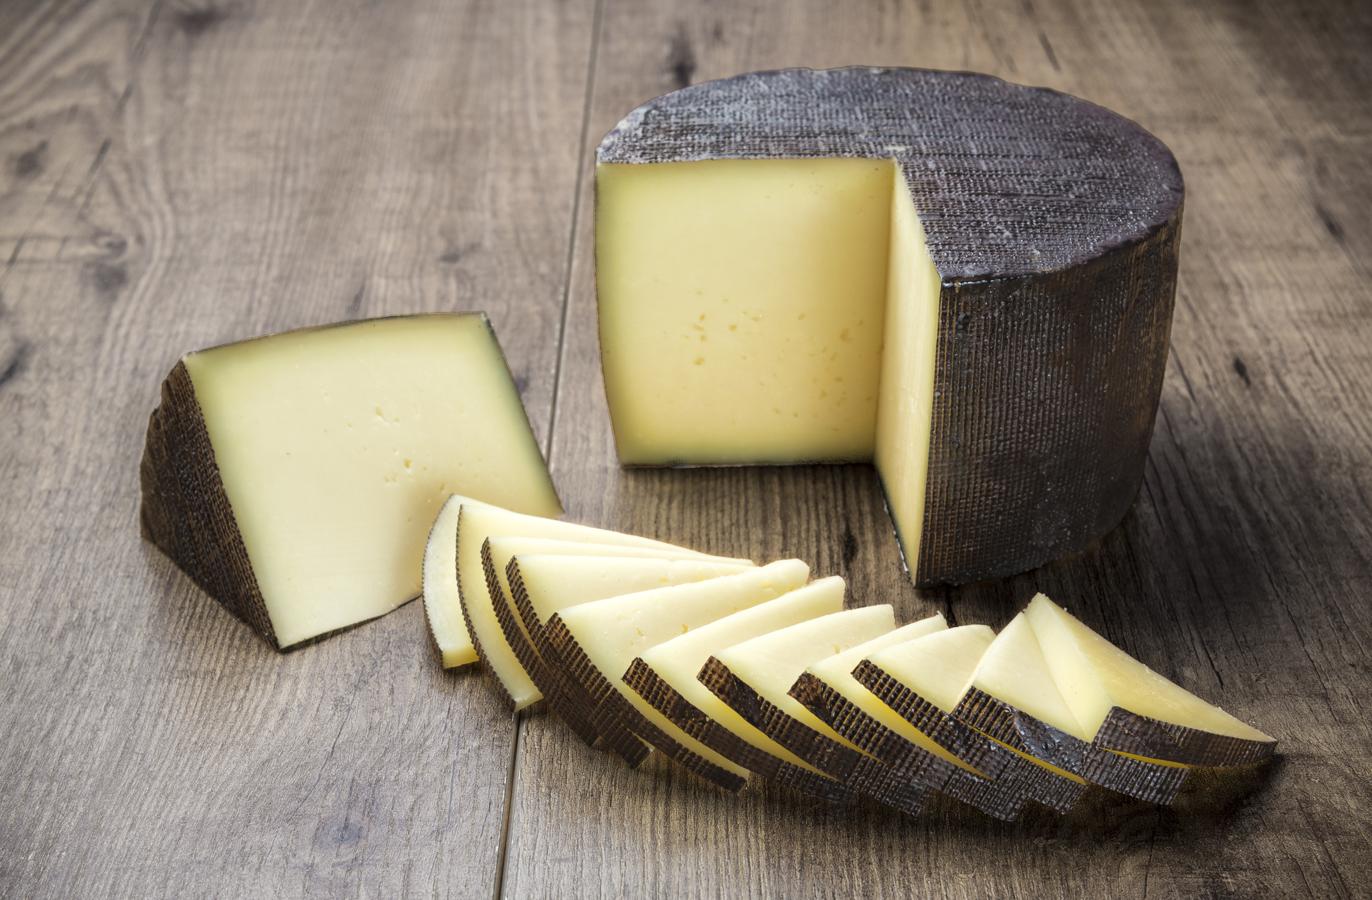 Queso curado. Los quesos, de procedencia animal, son una fuente rica en proteínas, y este en concreto copa la lista con 35,7 gramos por cada 100 gramos de queso, según datos de la BEDCA.